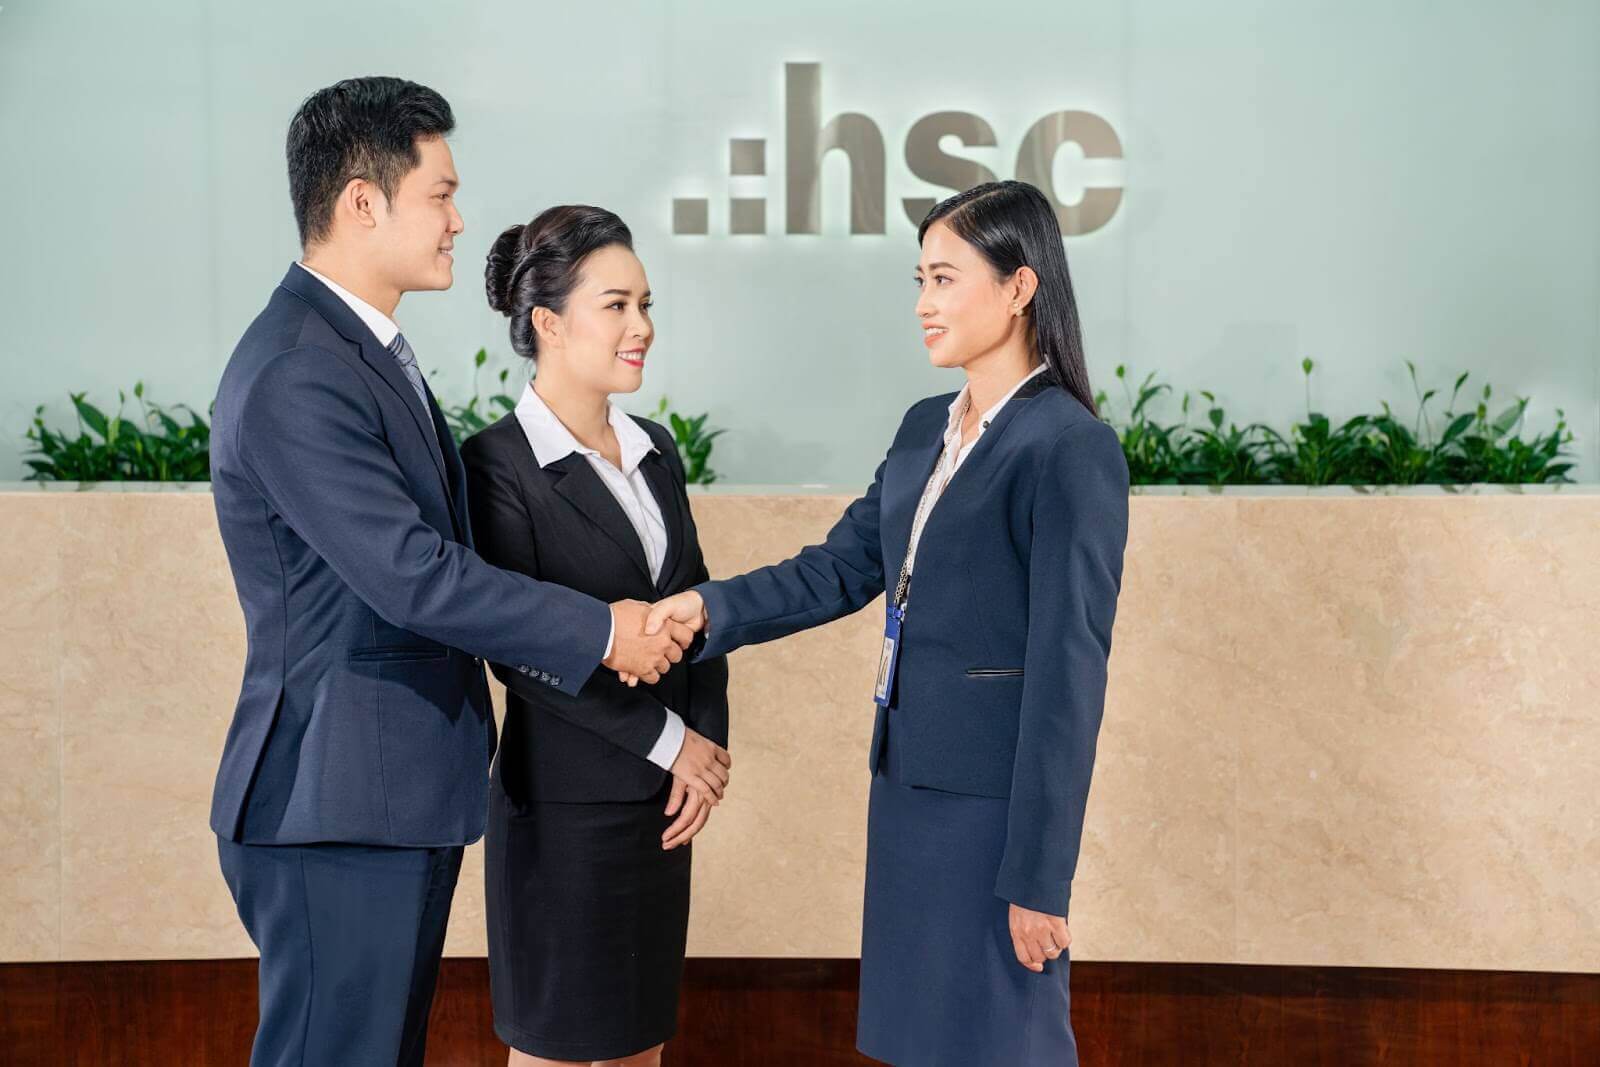 HSC là công ty chứng khoán đáng tin cậy để bạn mở tài khoản